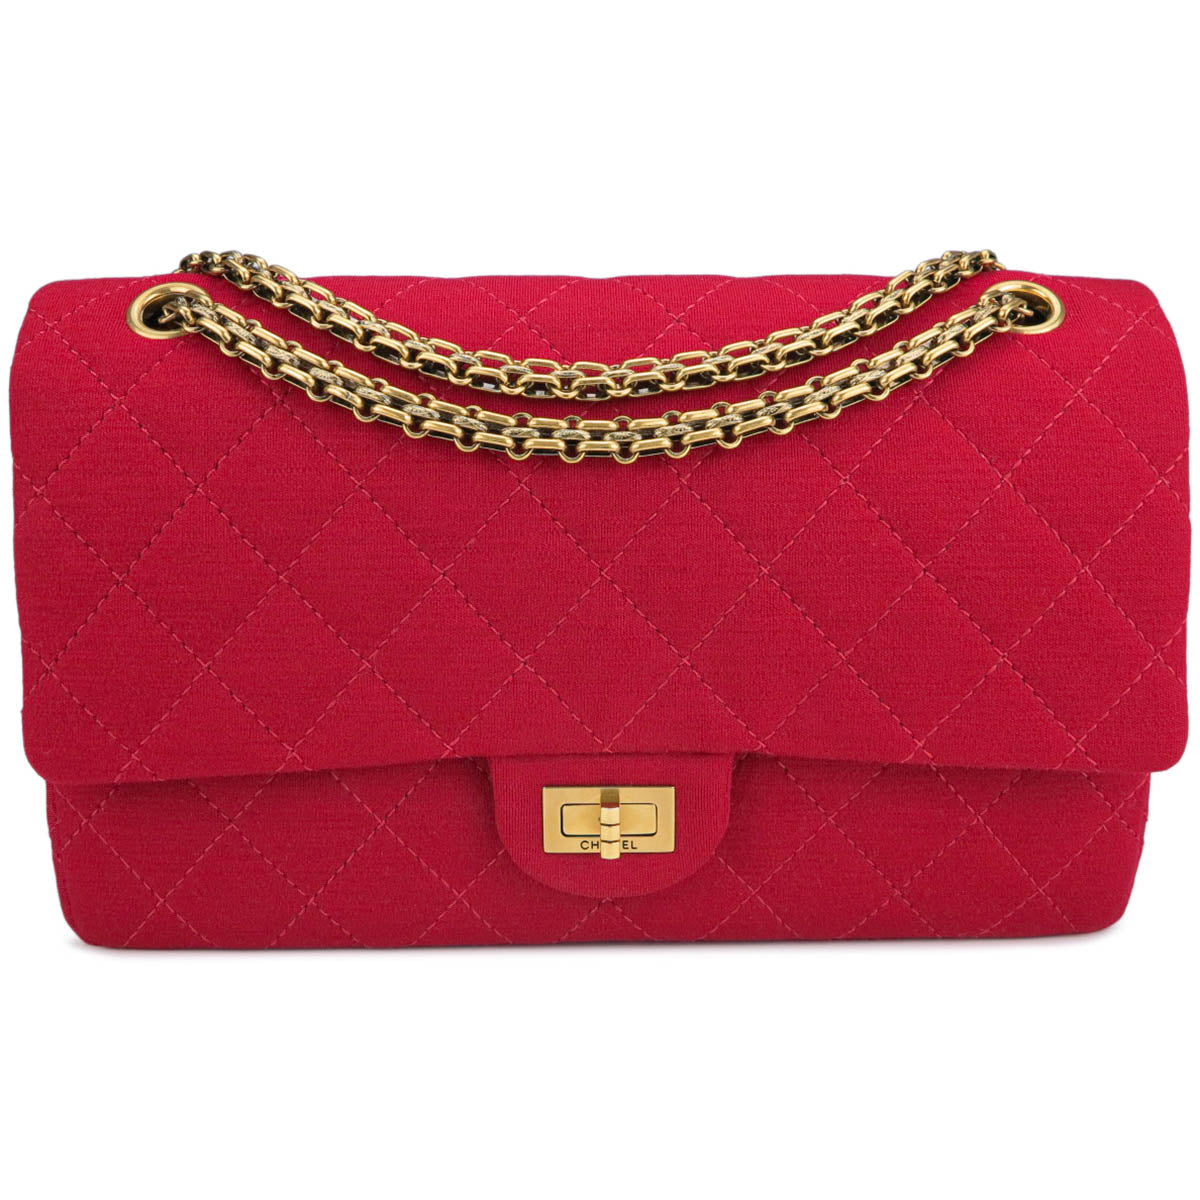 HealthdesignShops, Chanel 2.55 Handbag 396425